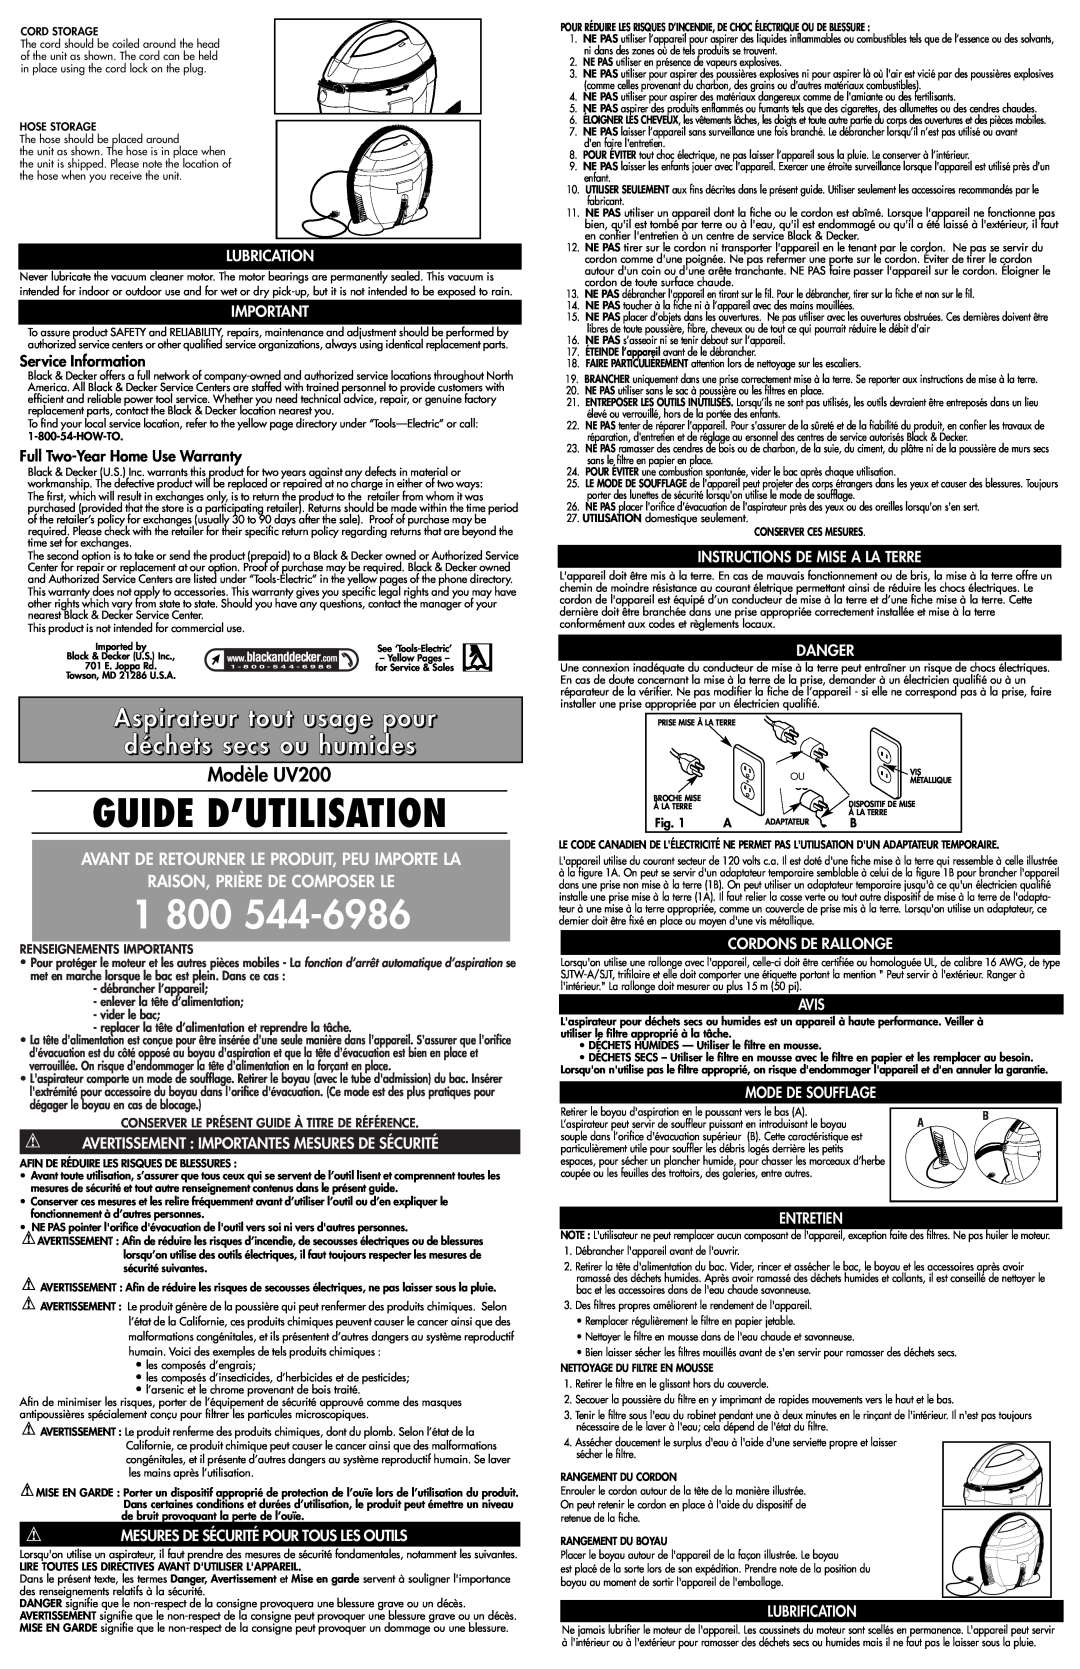 Black & Decker Guide D’Utilisation, 1 800, Aspirateur tout usage pour déchets secs ou humides, Modèle UV200, Avis 